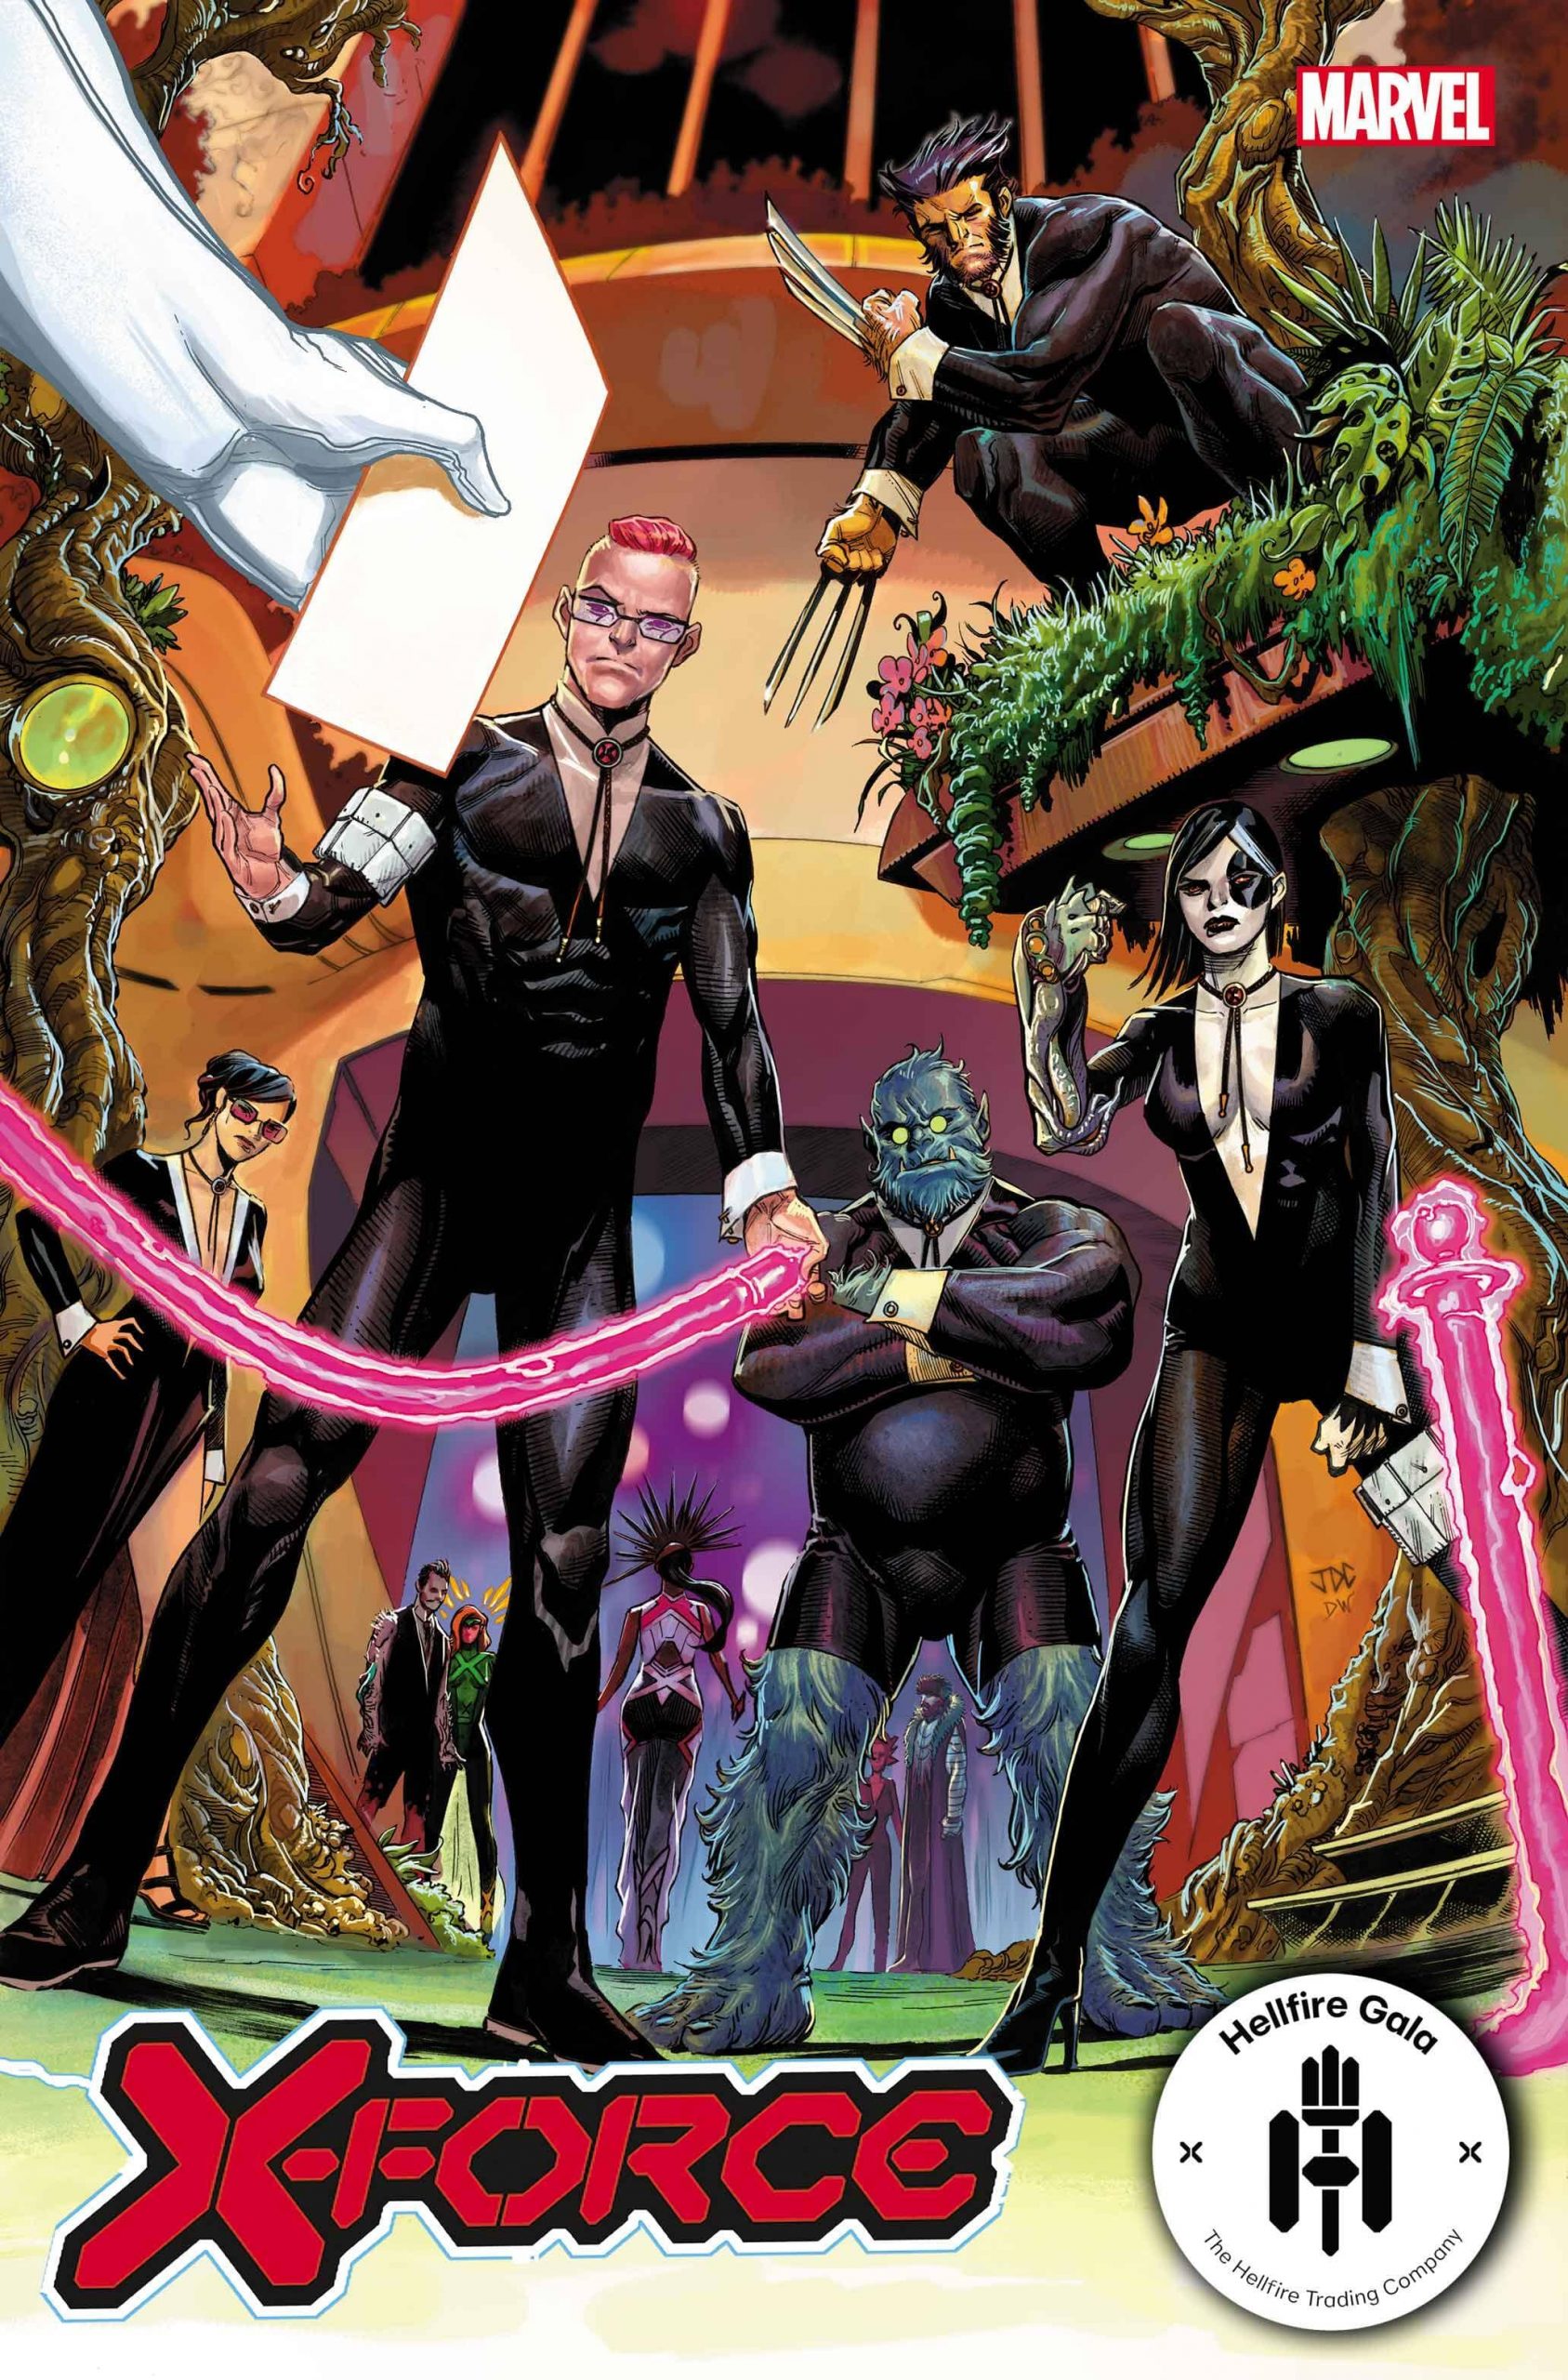 X-Force #20 - Hellfire Gala - A noite de Gala do Clube do Inferno em X-Men - Blog Farofeiros